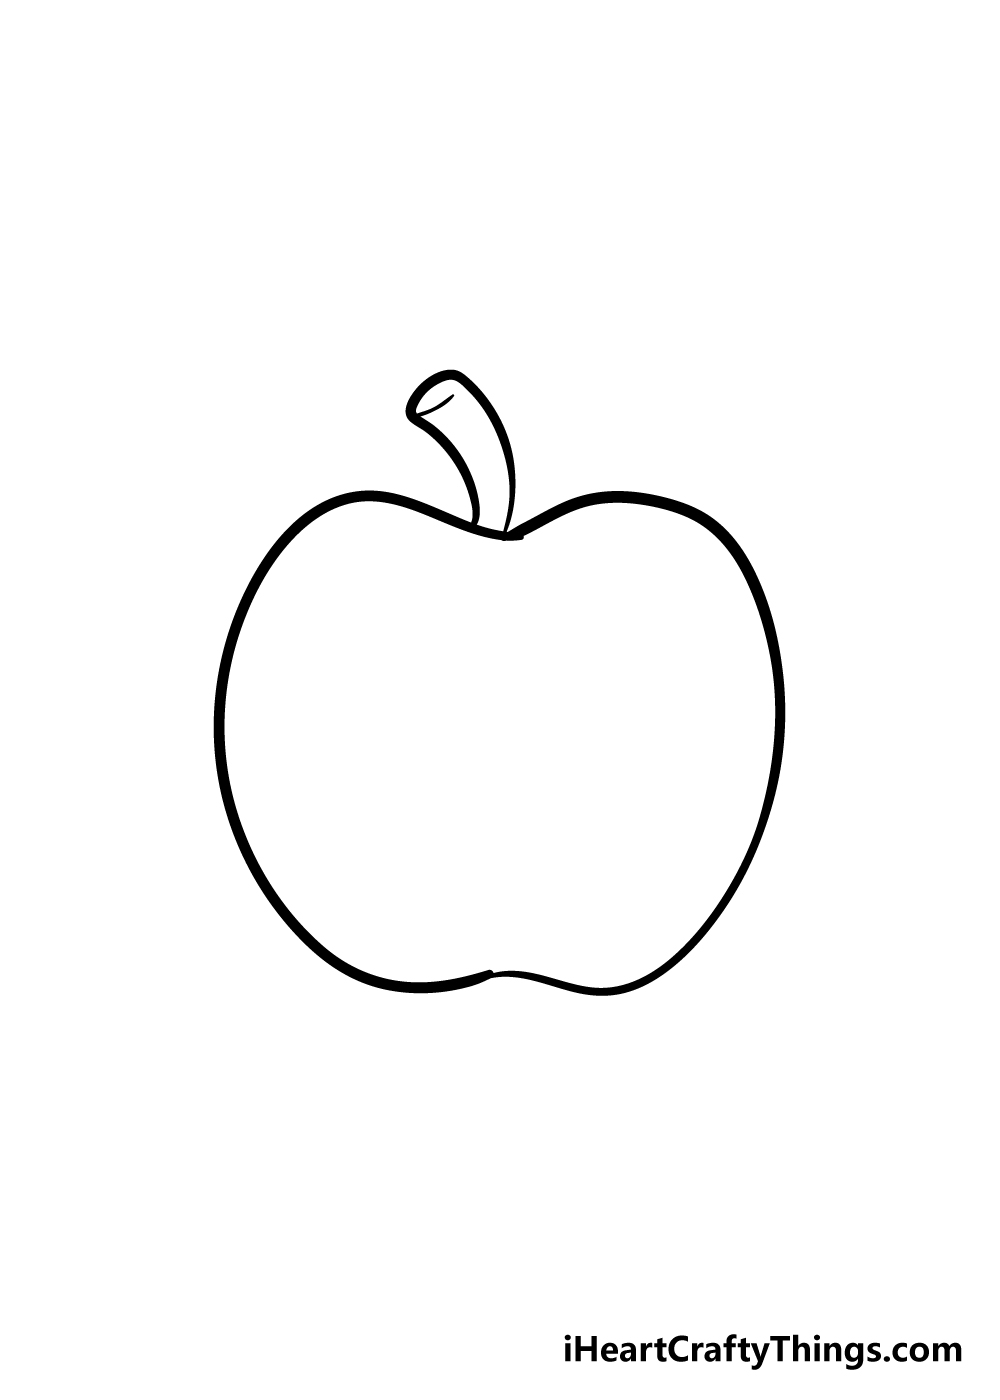 13 Vẽ quả táo ý tưởng  vẽ tĩnh vật các môn nghệ thuật mỹ thuật